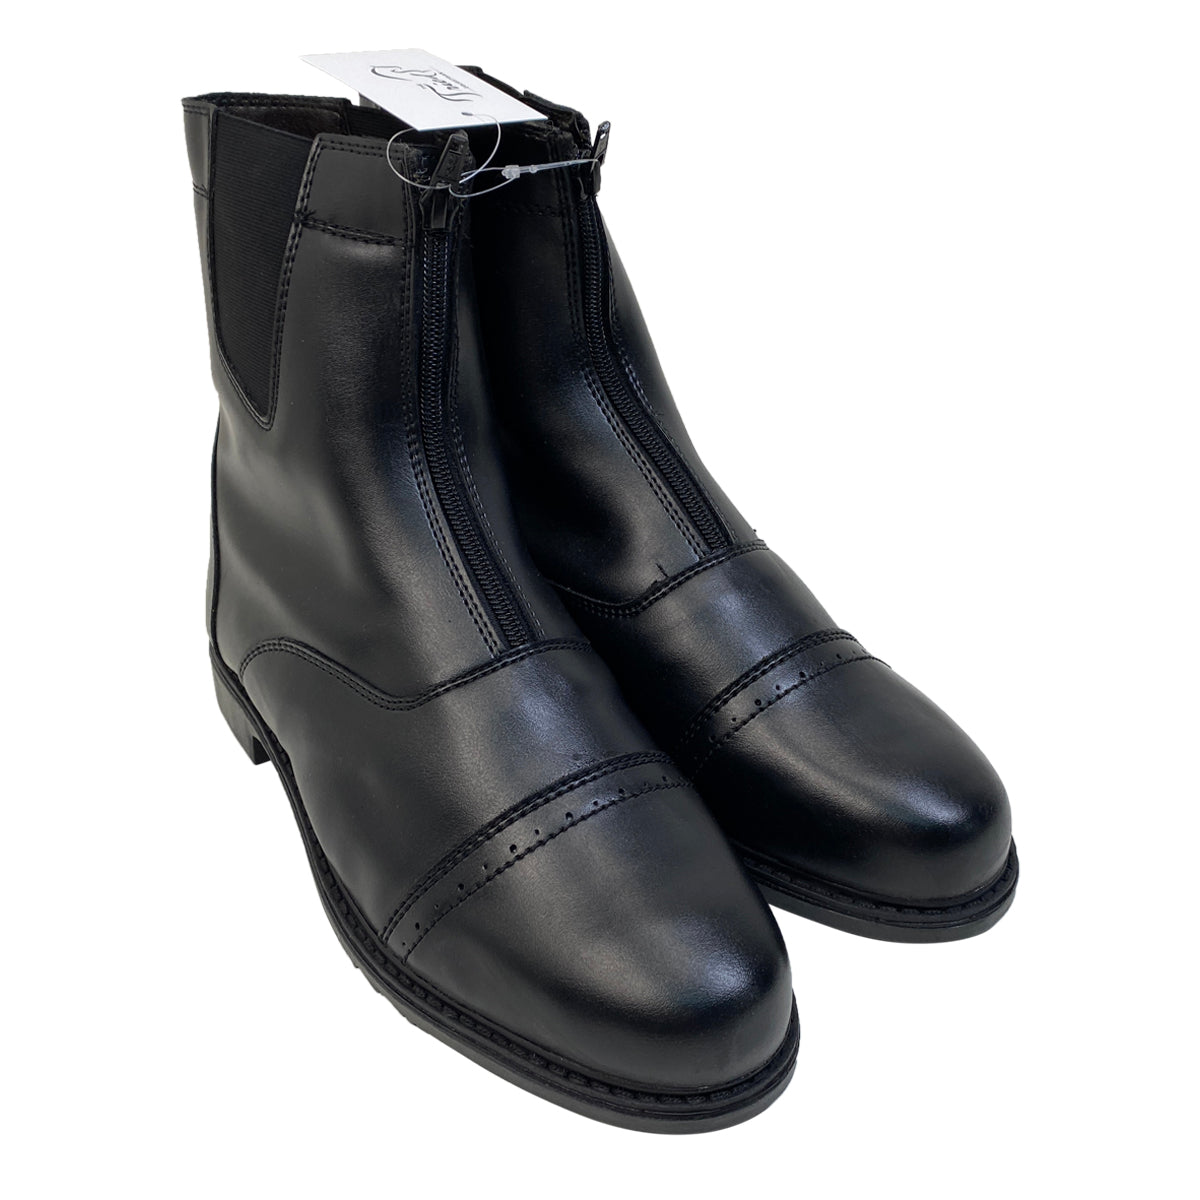 TuffRider Front Zip 'Starter' Paddock Boots in Black